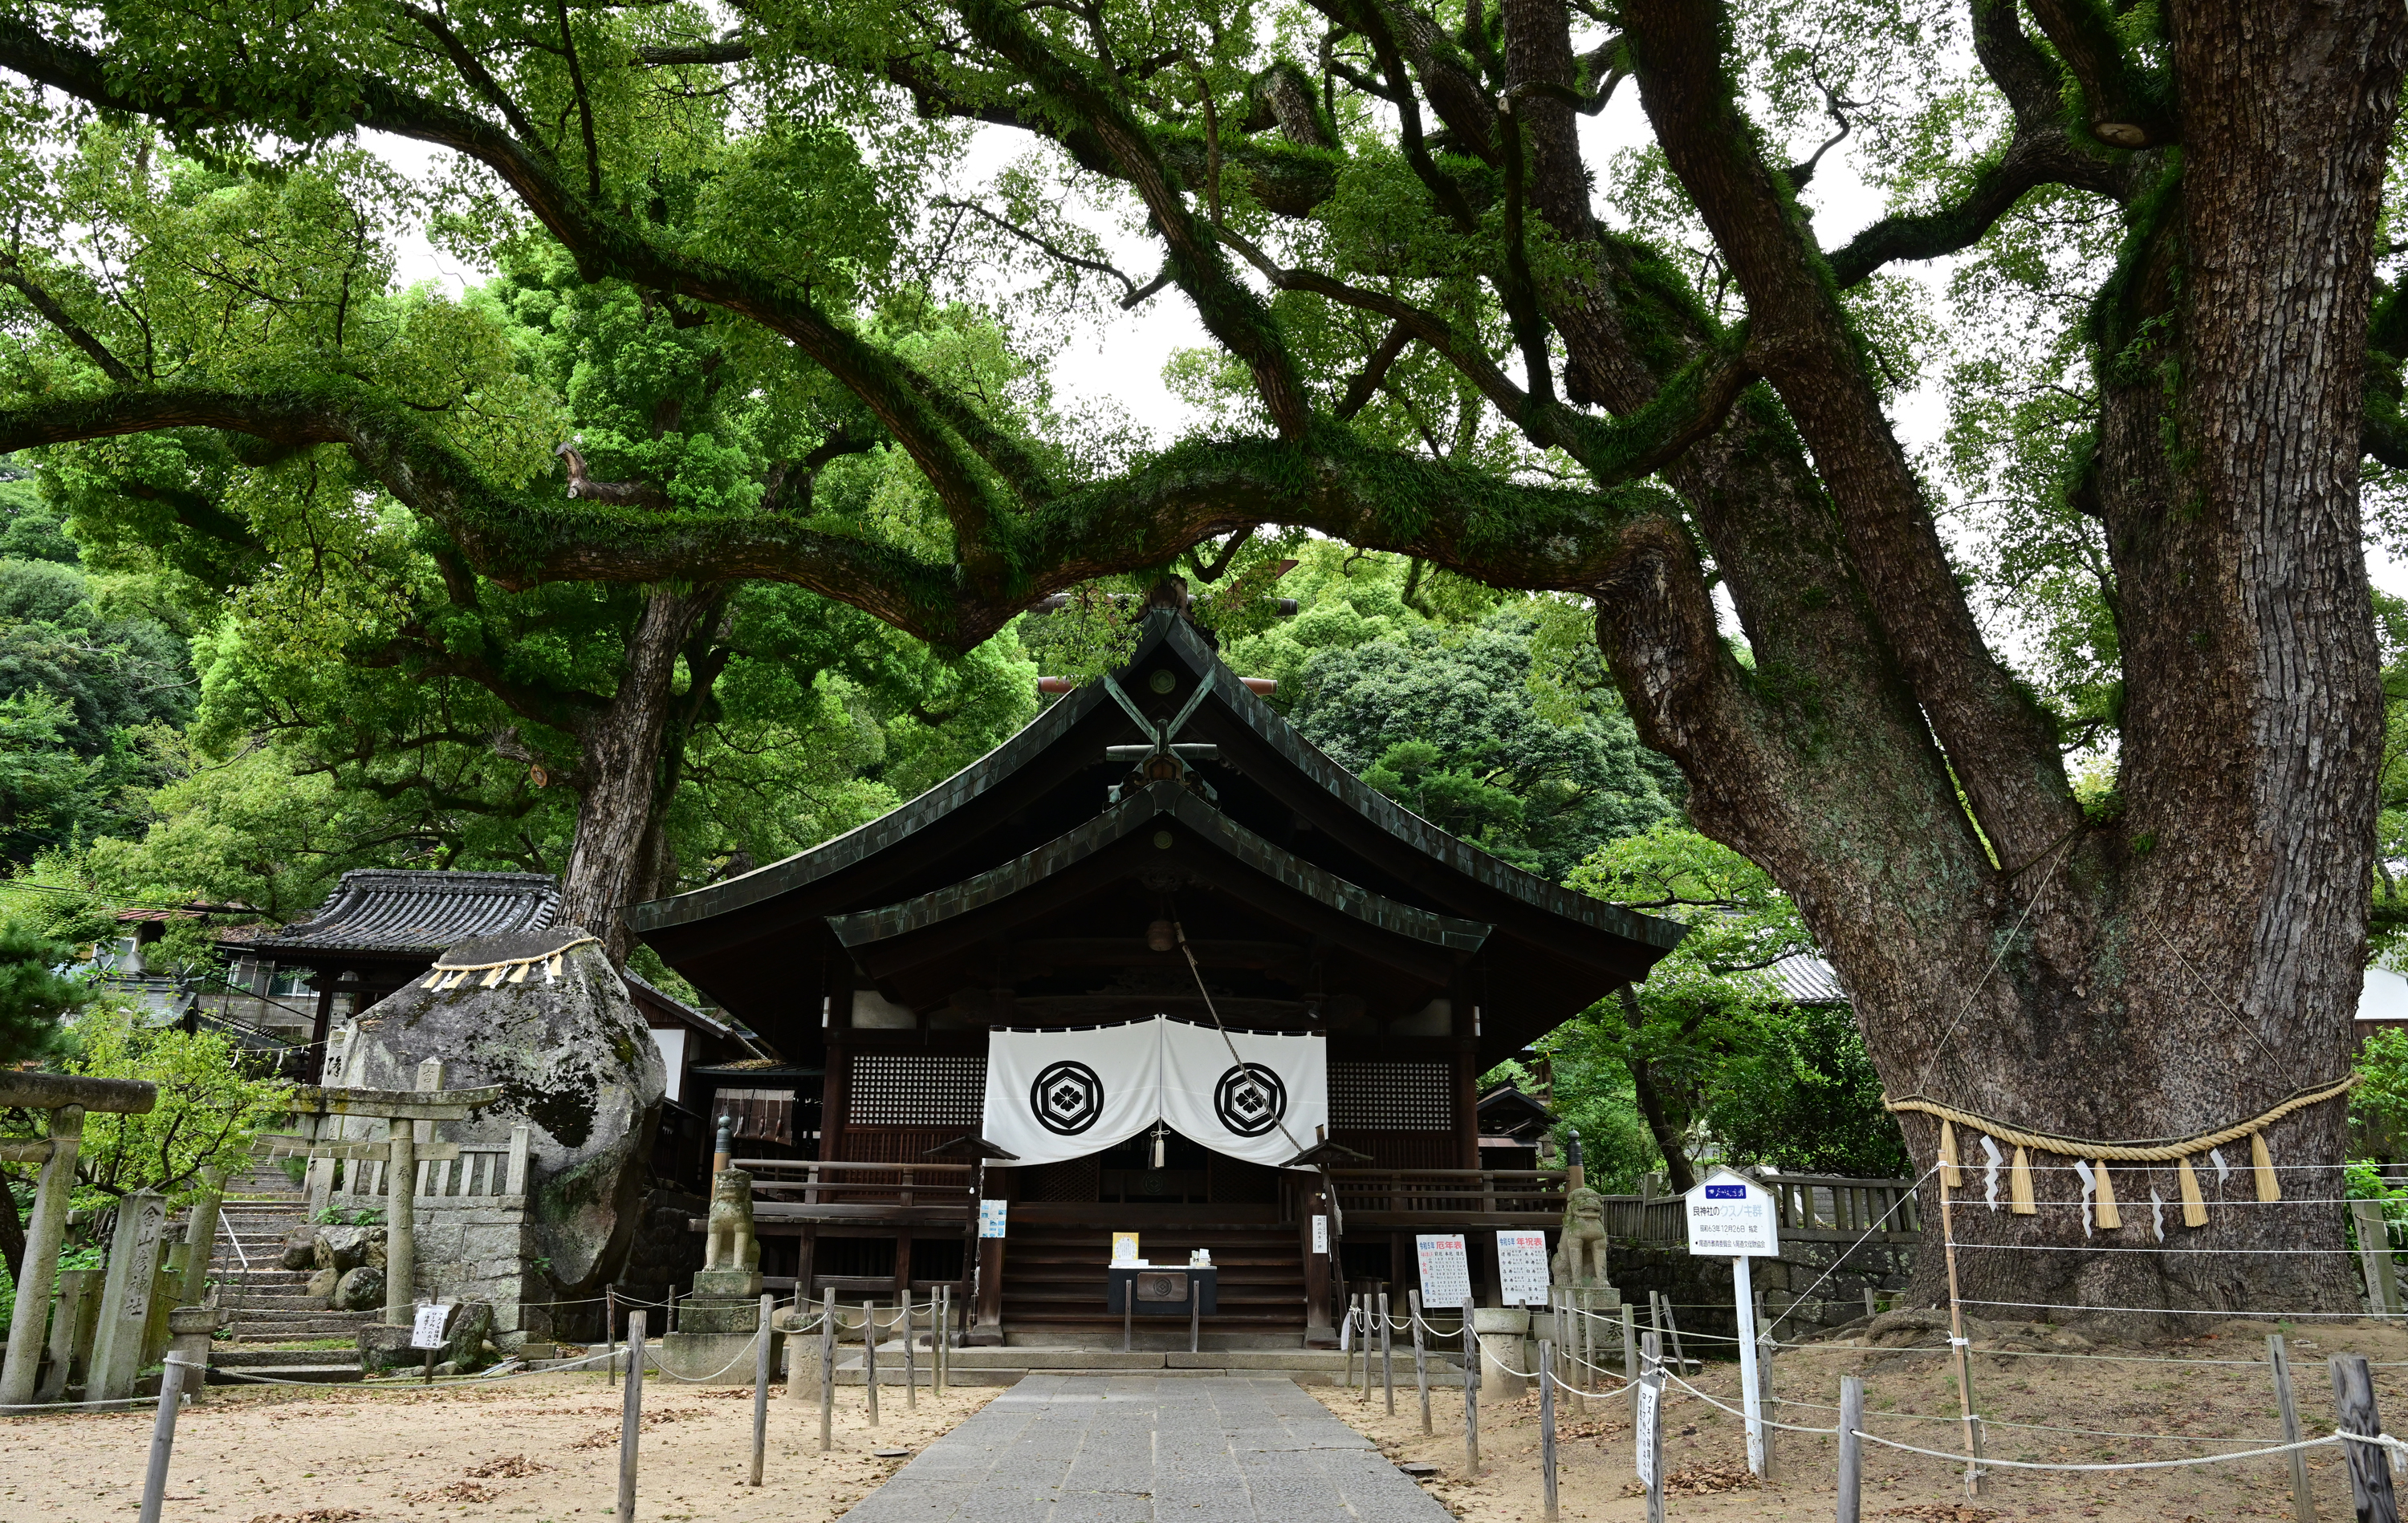 오노미치시에서 가장 먼저 세워진 우시토라 신사. 수령 900년을 넘나드는 경내 녹나무는 기가 센 ‘파워 스폿’으로 유명하다.